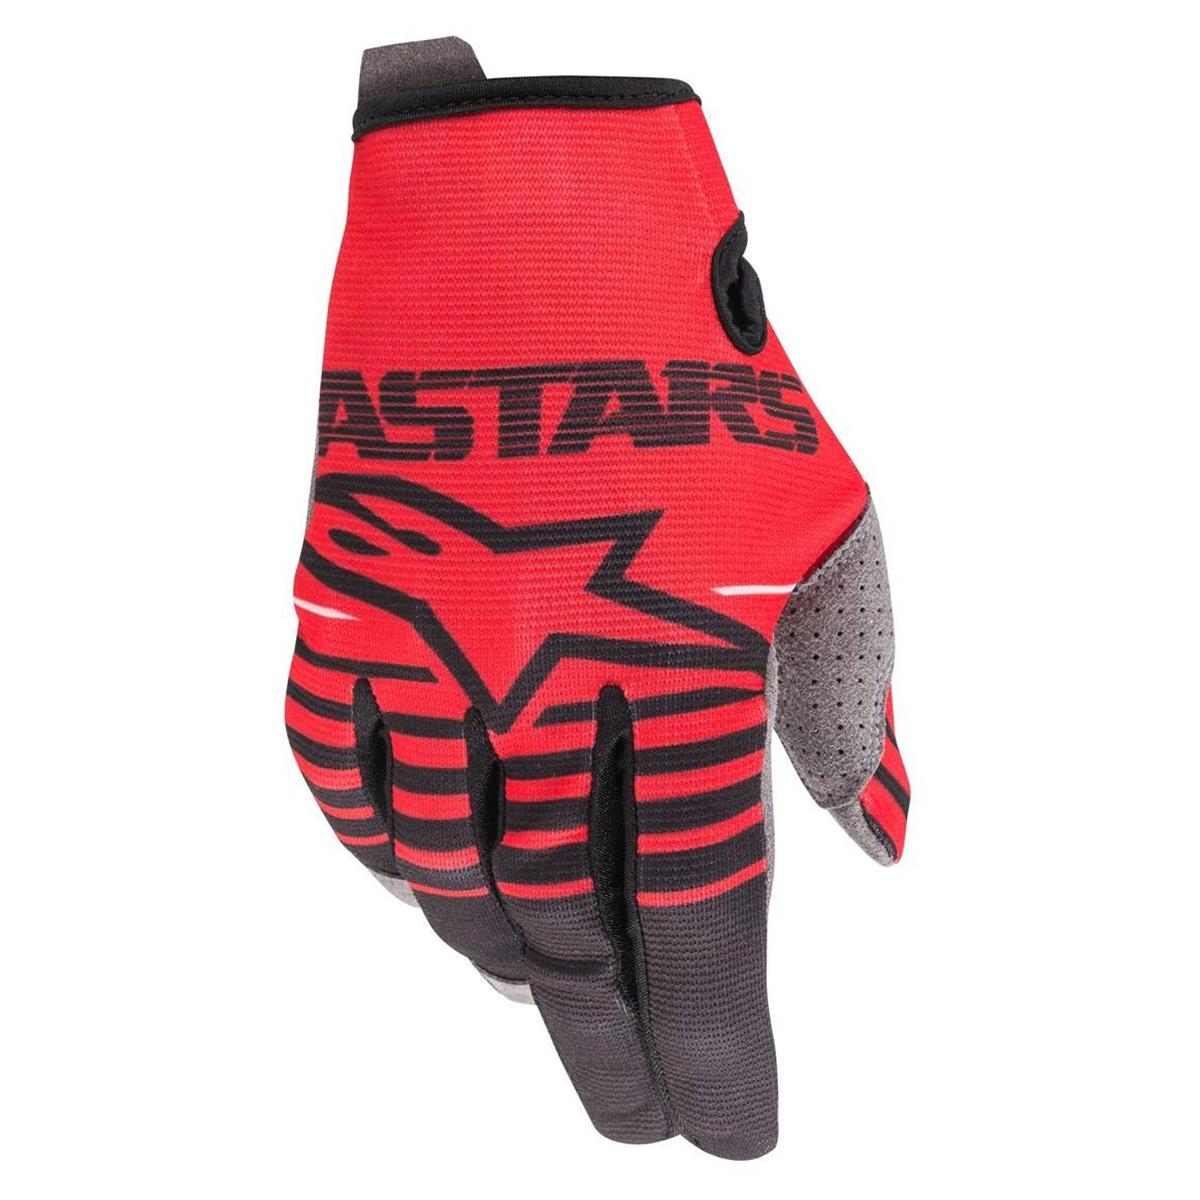 Alpinestars Gloves Radar Bright Red/Black